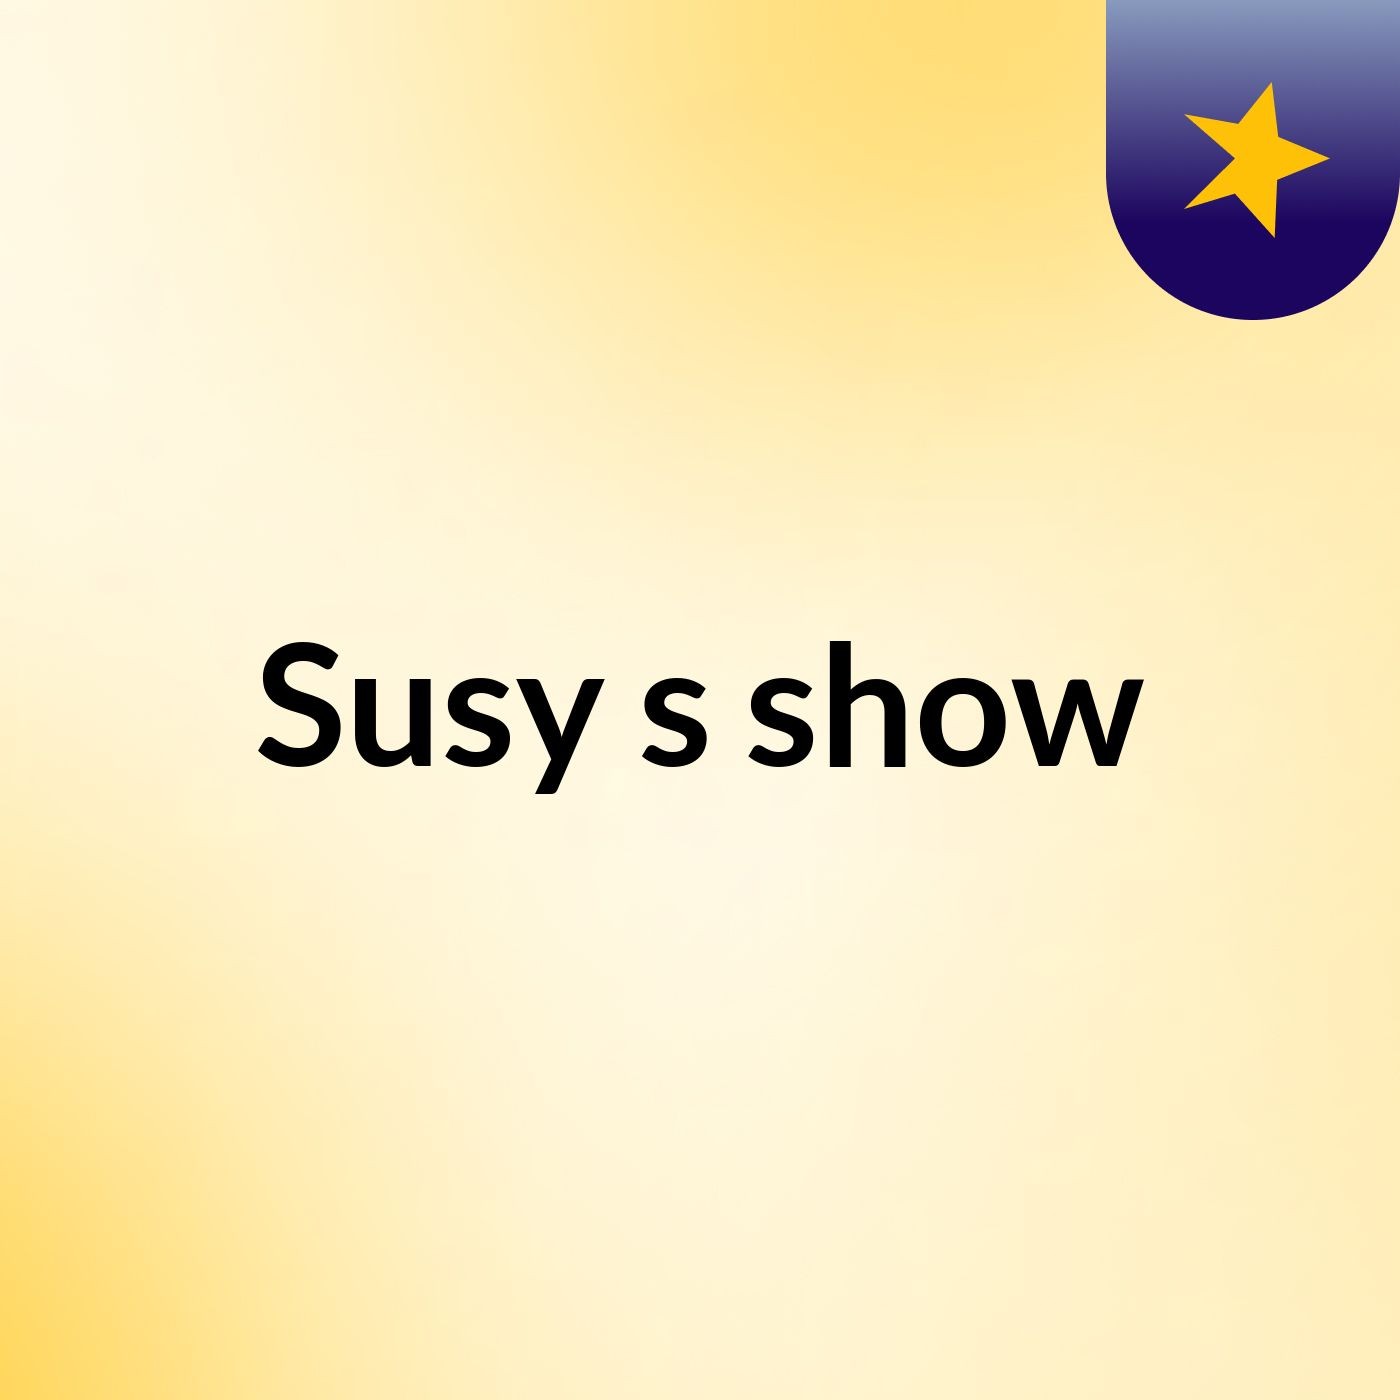 Susy's show